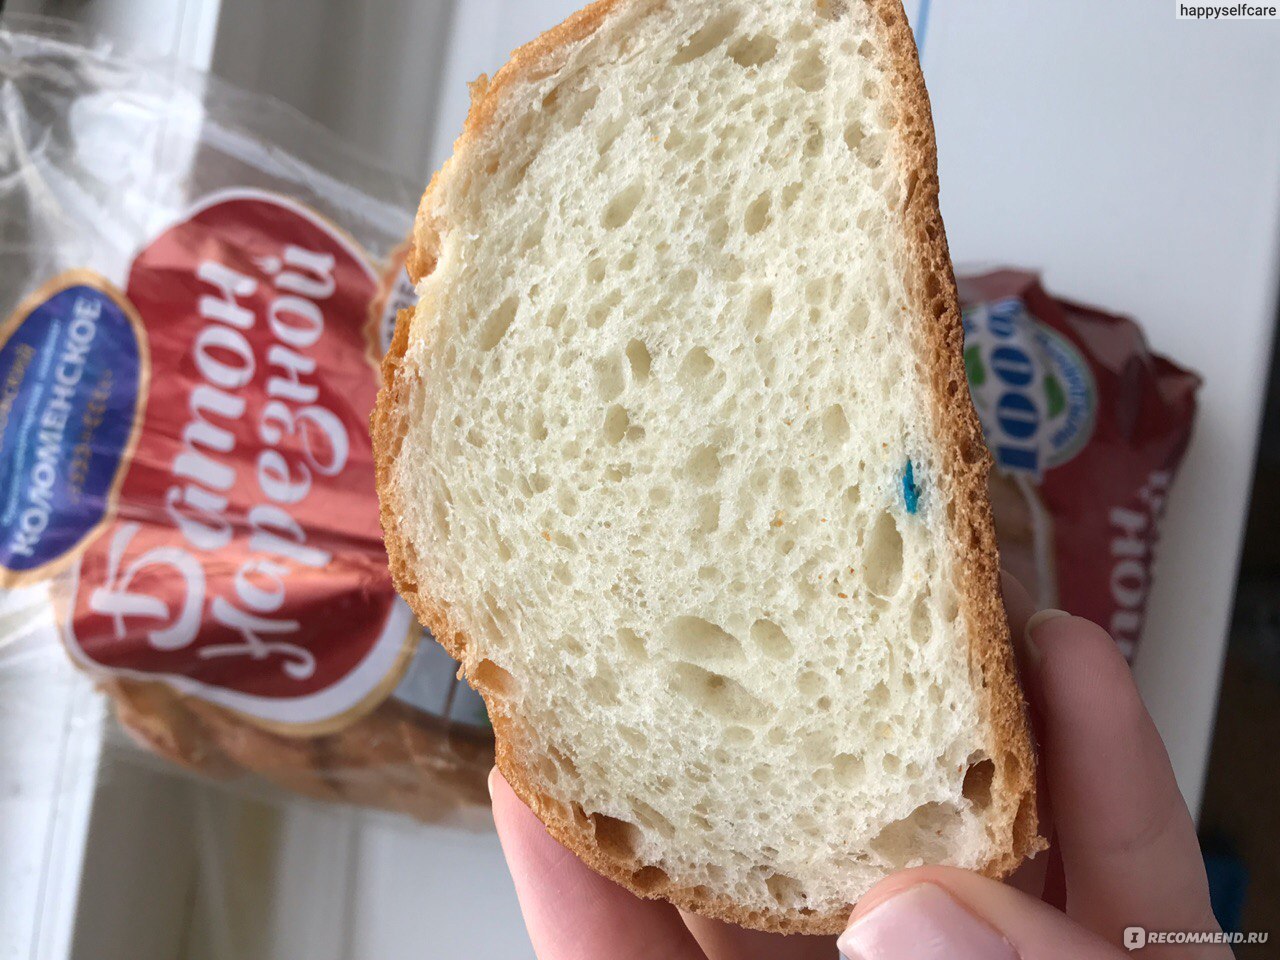 Хлеб белый нарезной Коломенский